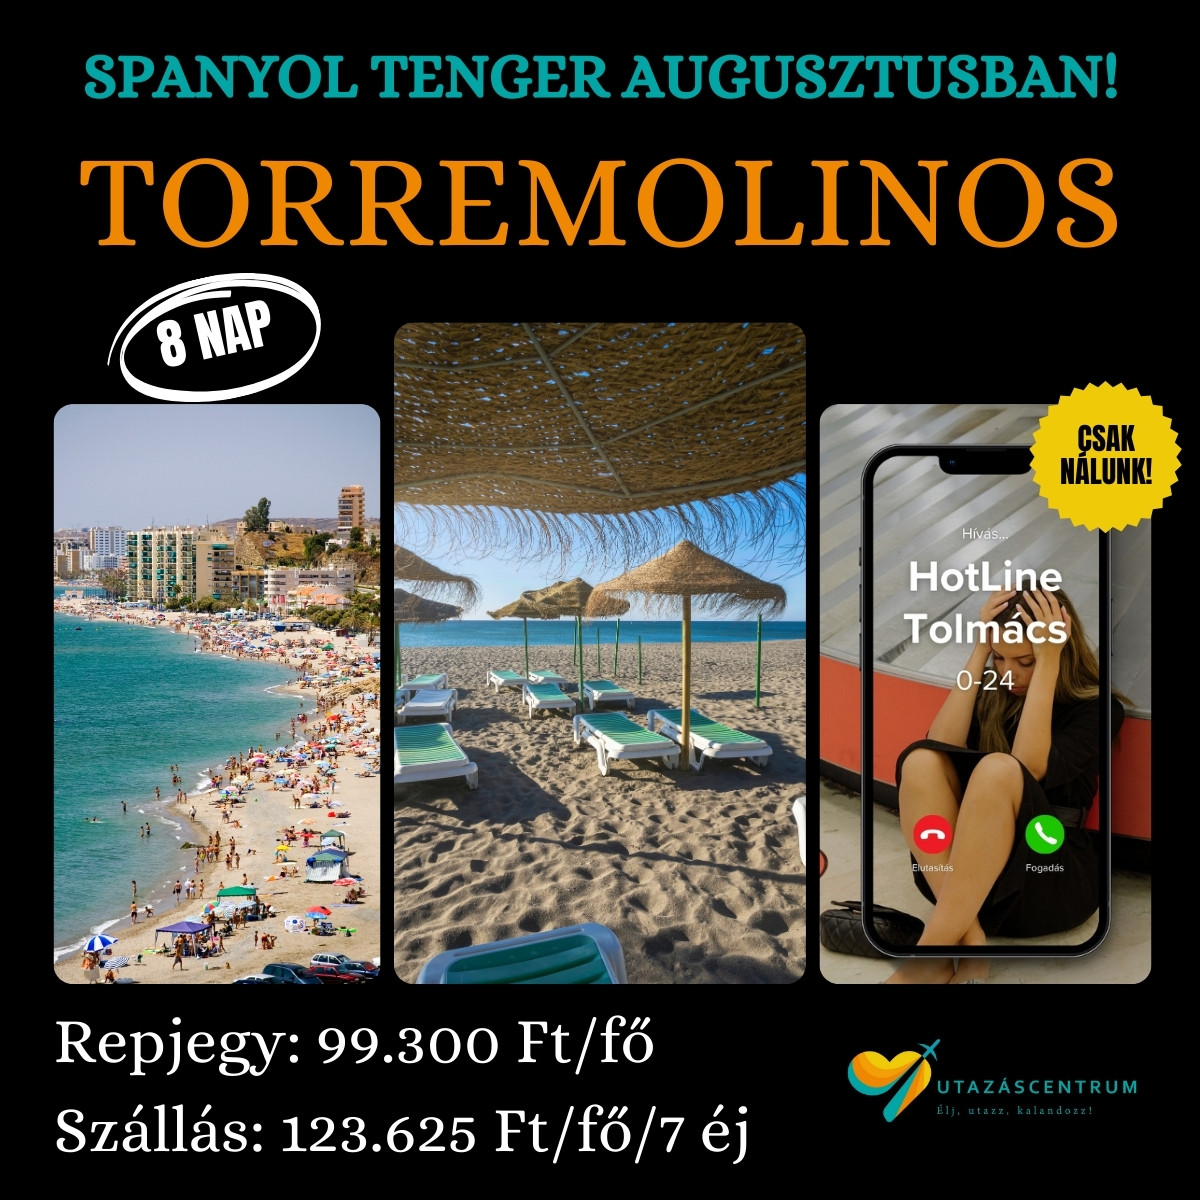 Spanyolország utazás Malaga nyaralás Torremolinos programok látnivalók városnézés üdülés utazási tipp utazáscentrum blog